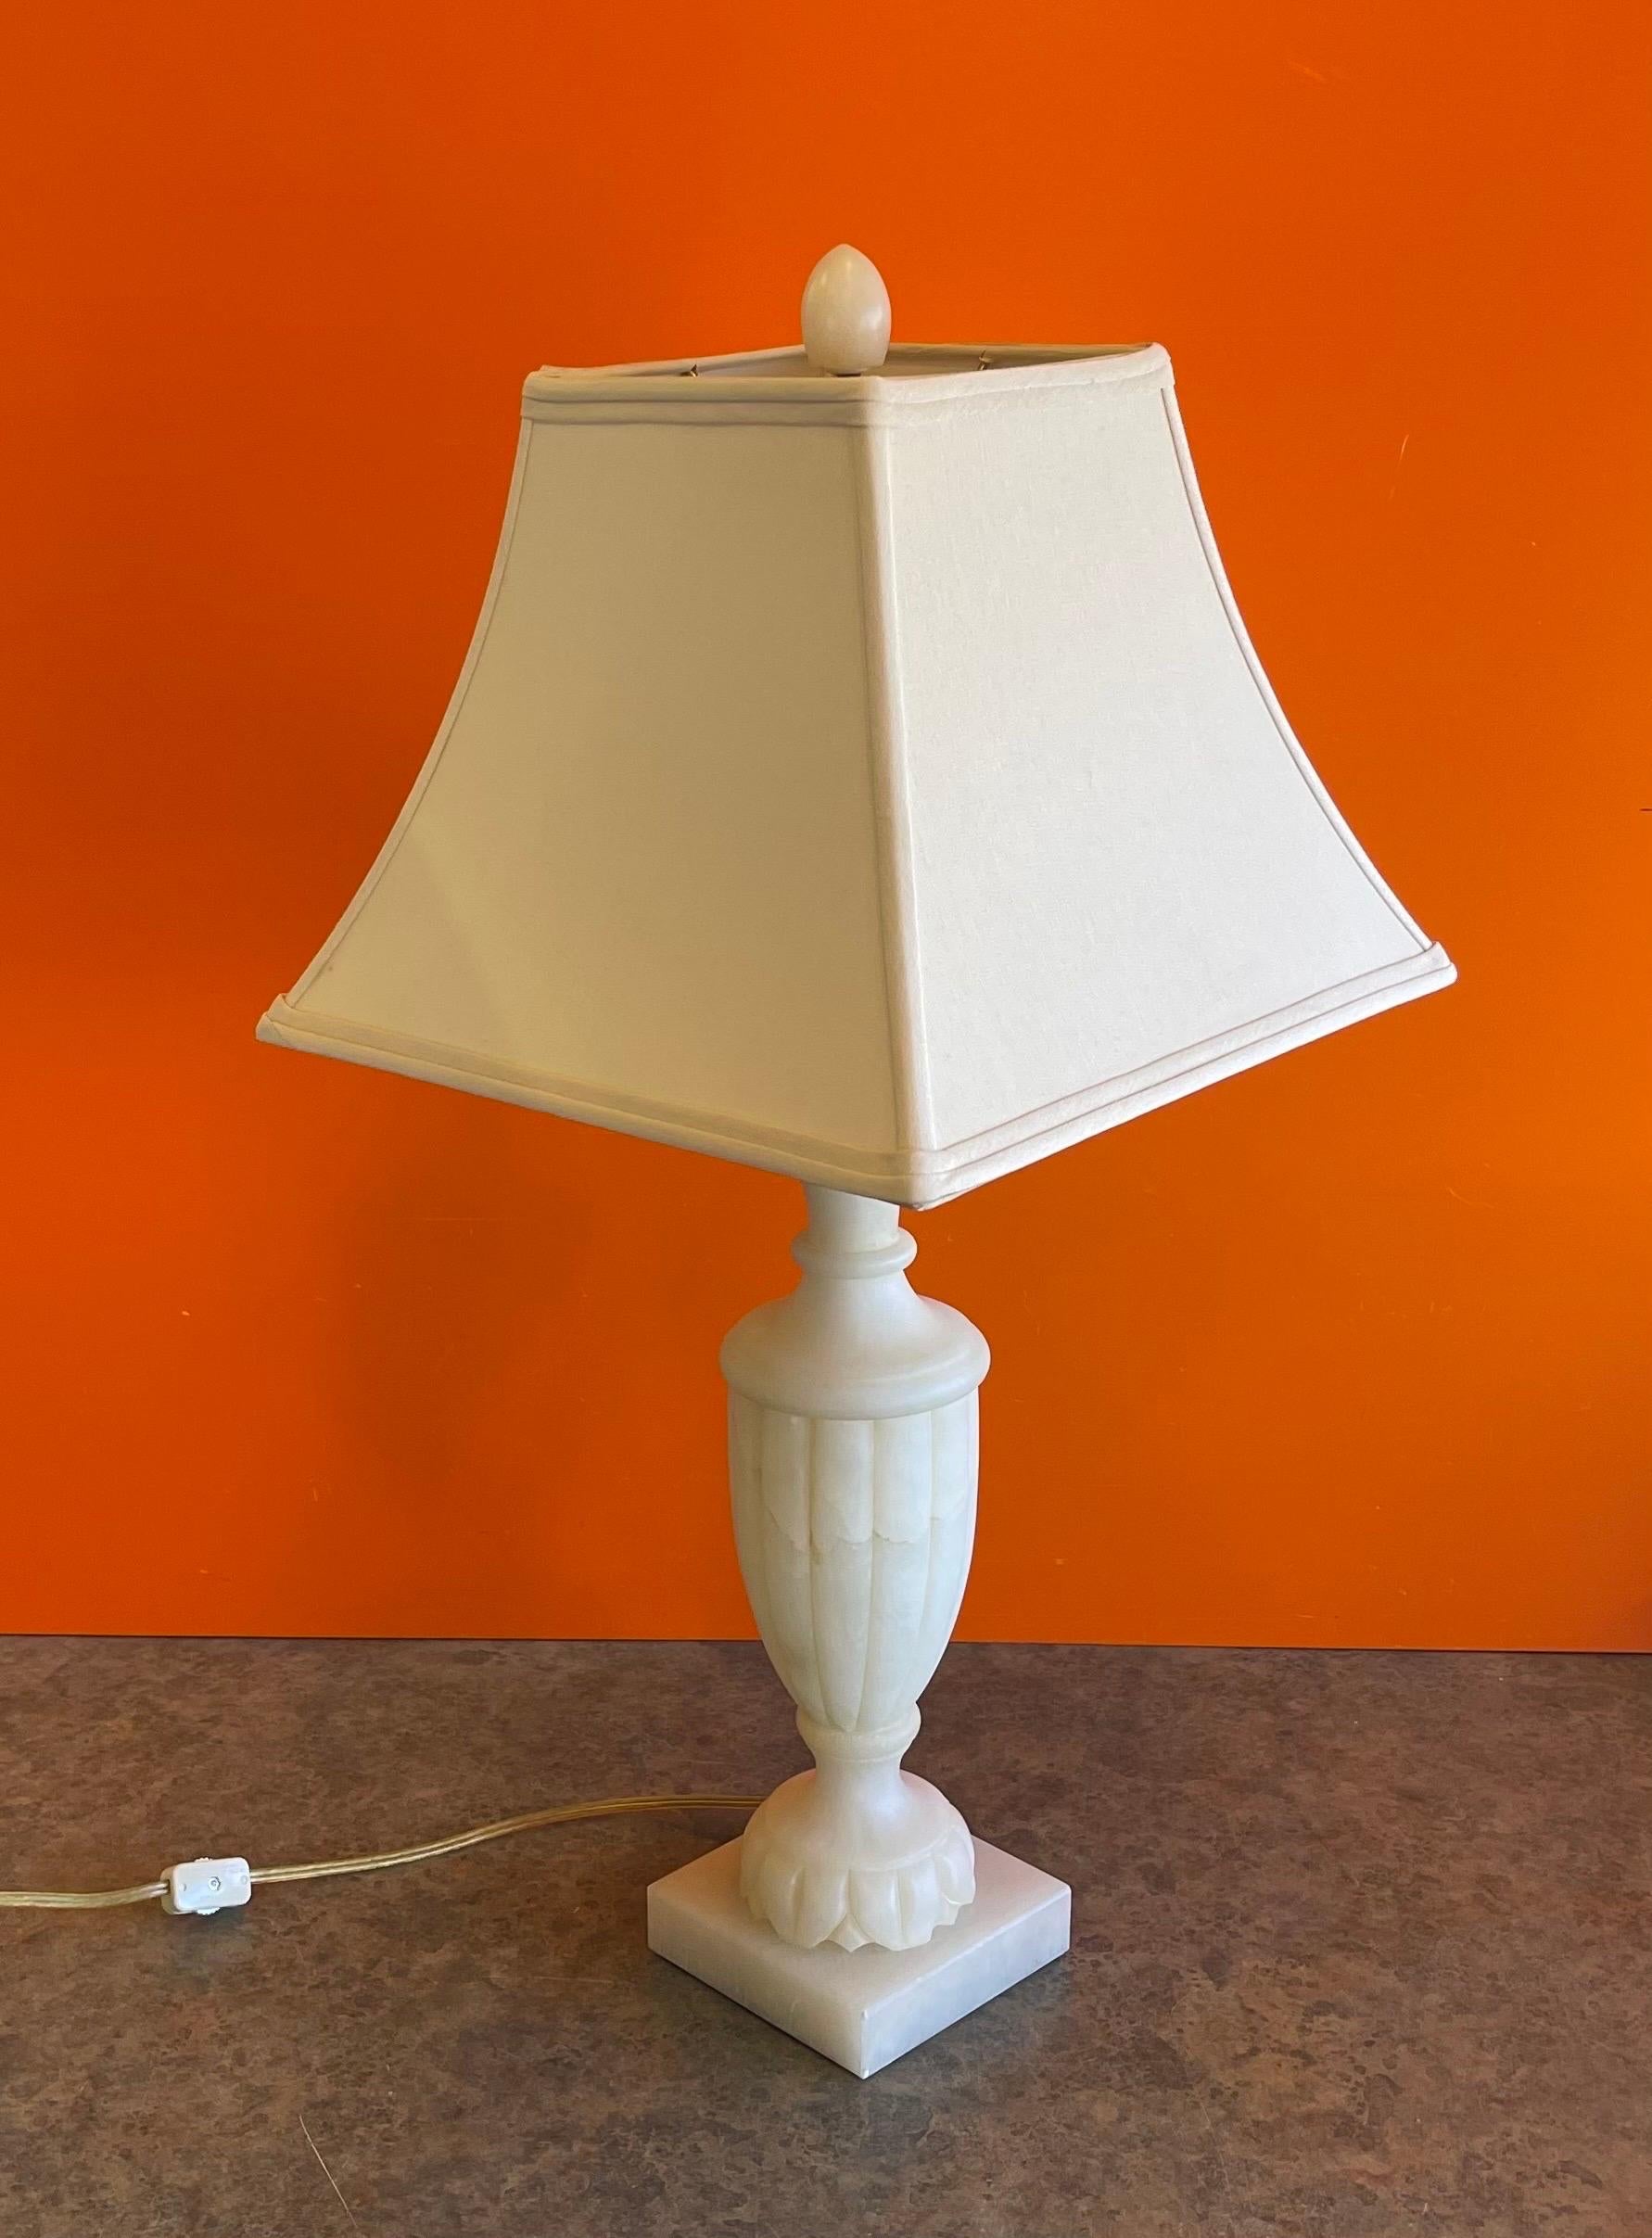 Une très belle lampe de table en albâtre sculptée à la main par Sarreid, Ltd d'Espagne, vers les années 1990. La lampe est en très bon état, sans éclats ni fissures et mesure 26 